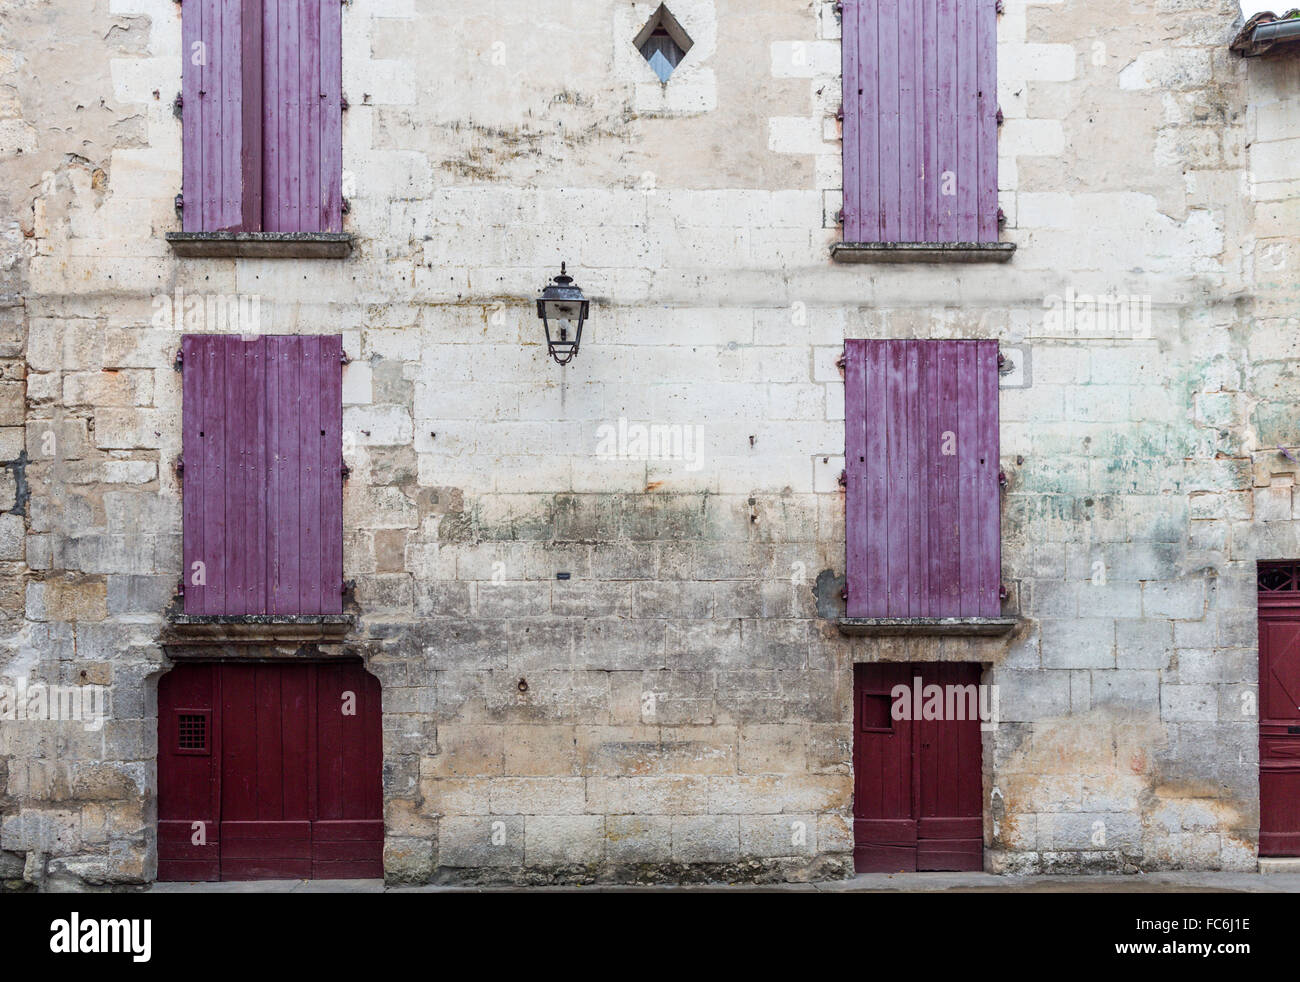 Fenêtres et volets, Brantome, vallée de la Loire, France Banque D'Images